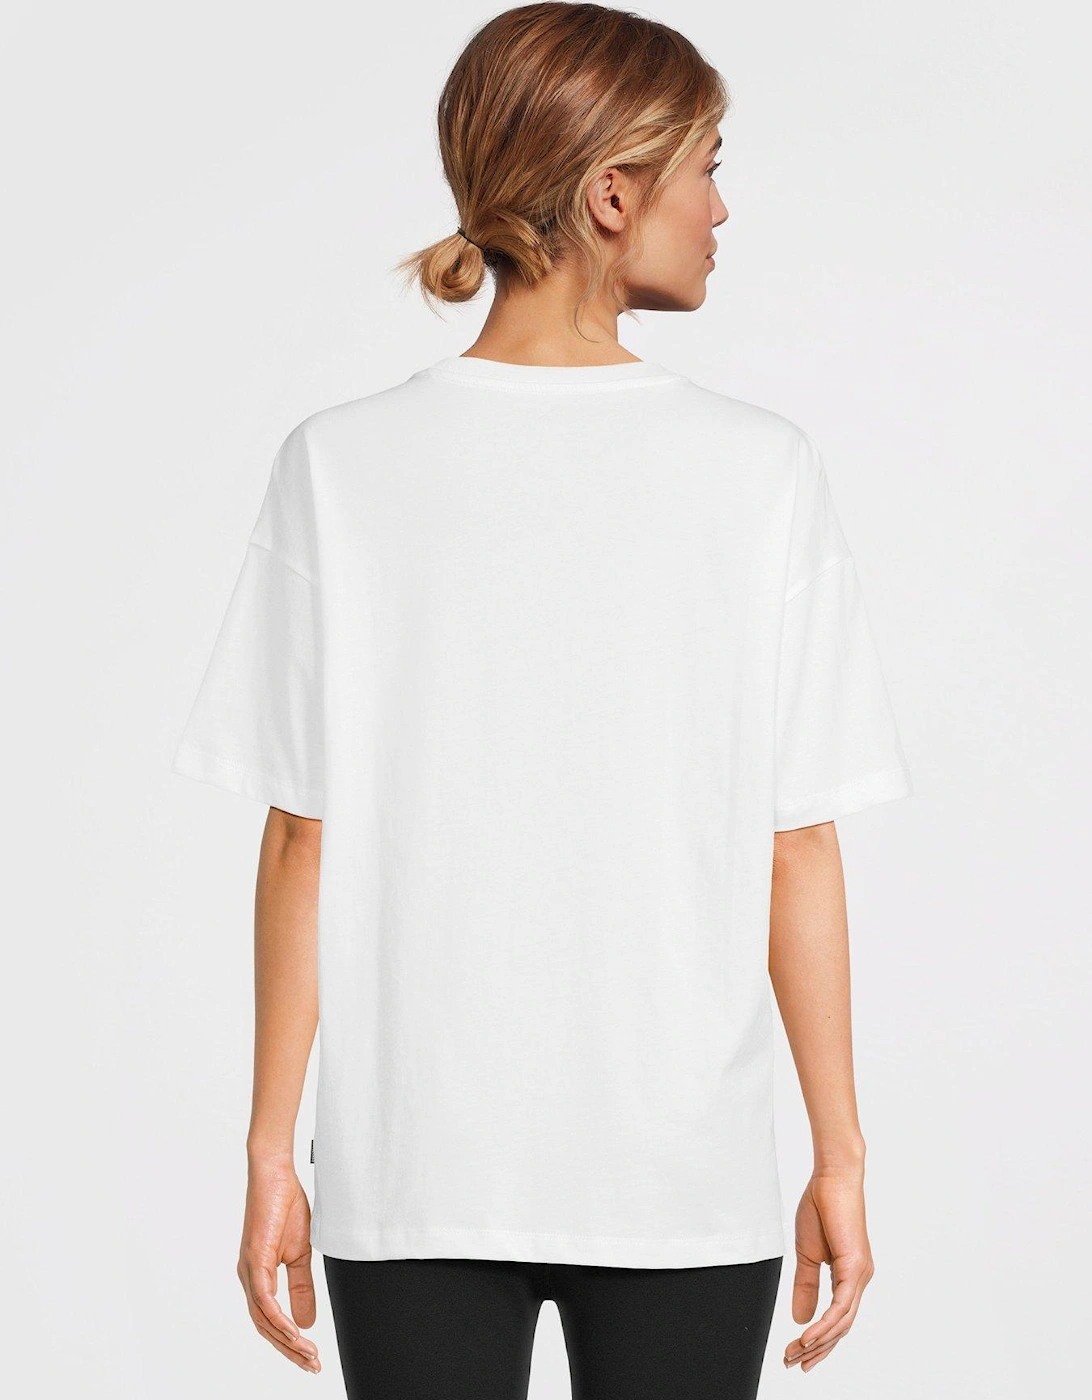 Womens Oversized Cherry T-shirt - White